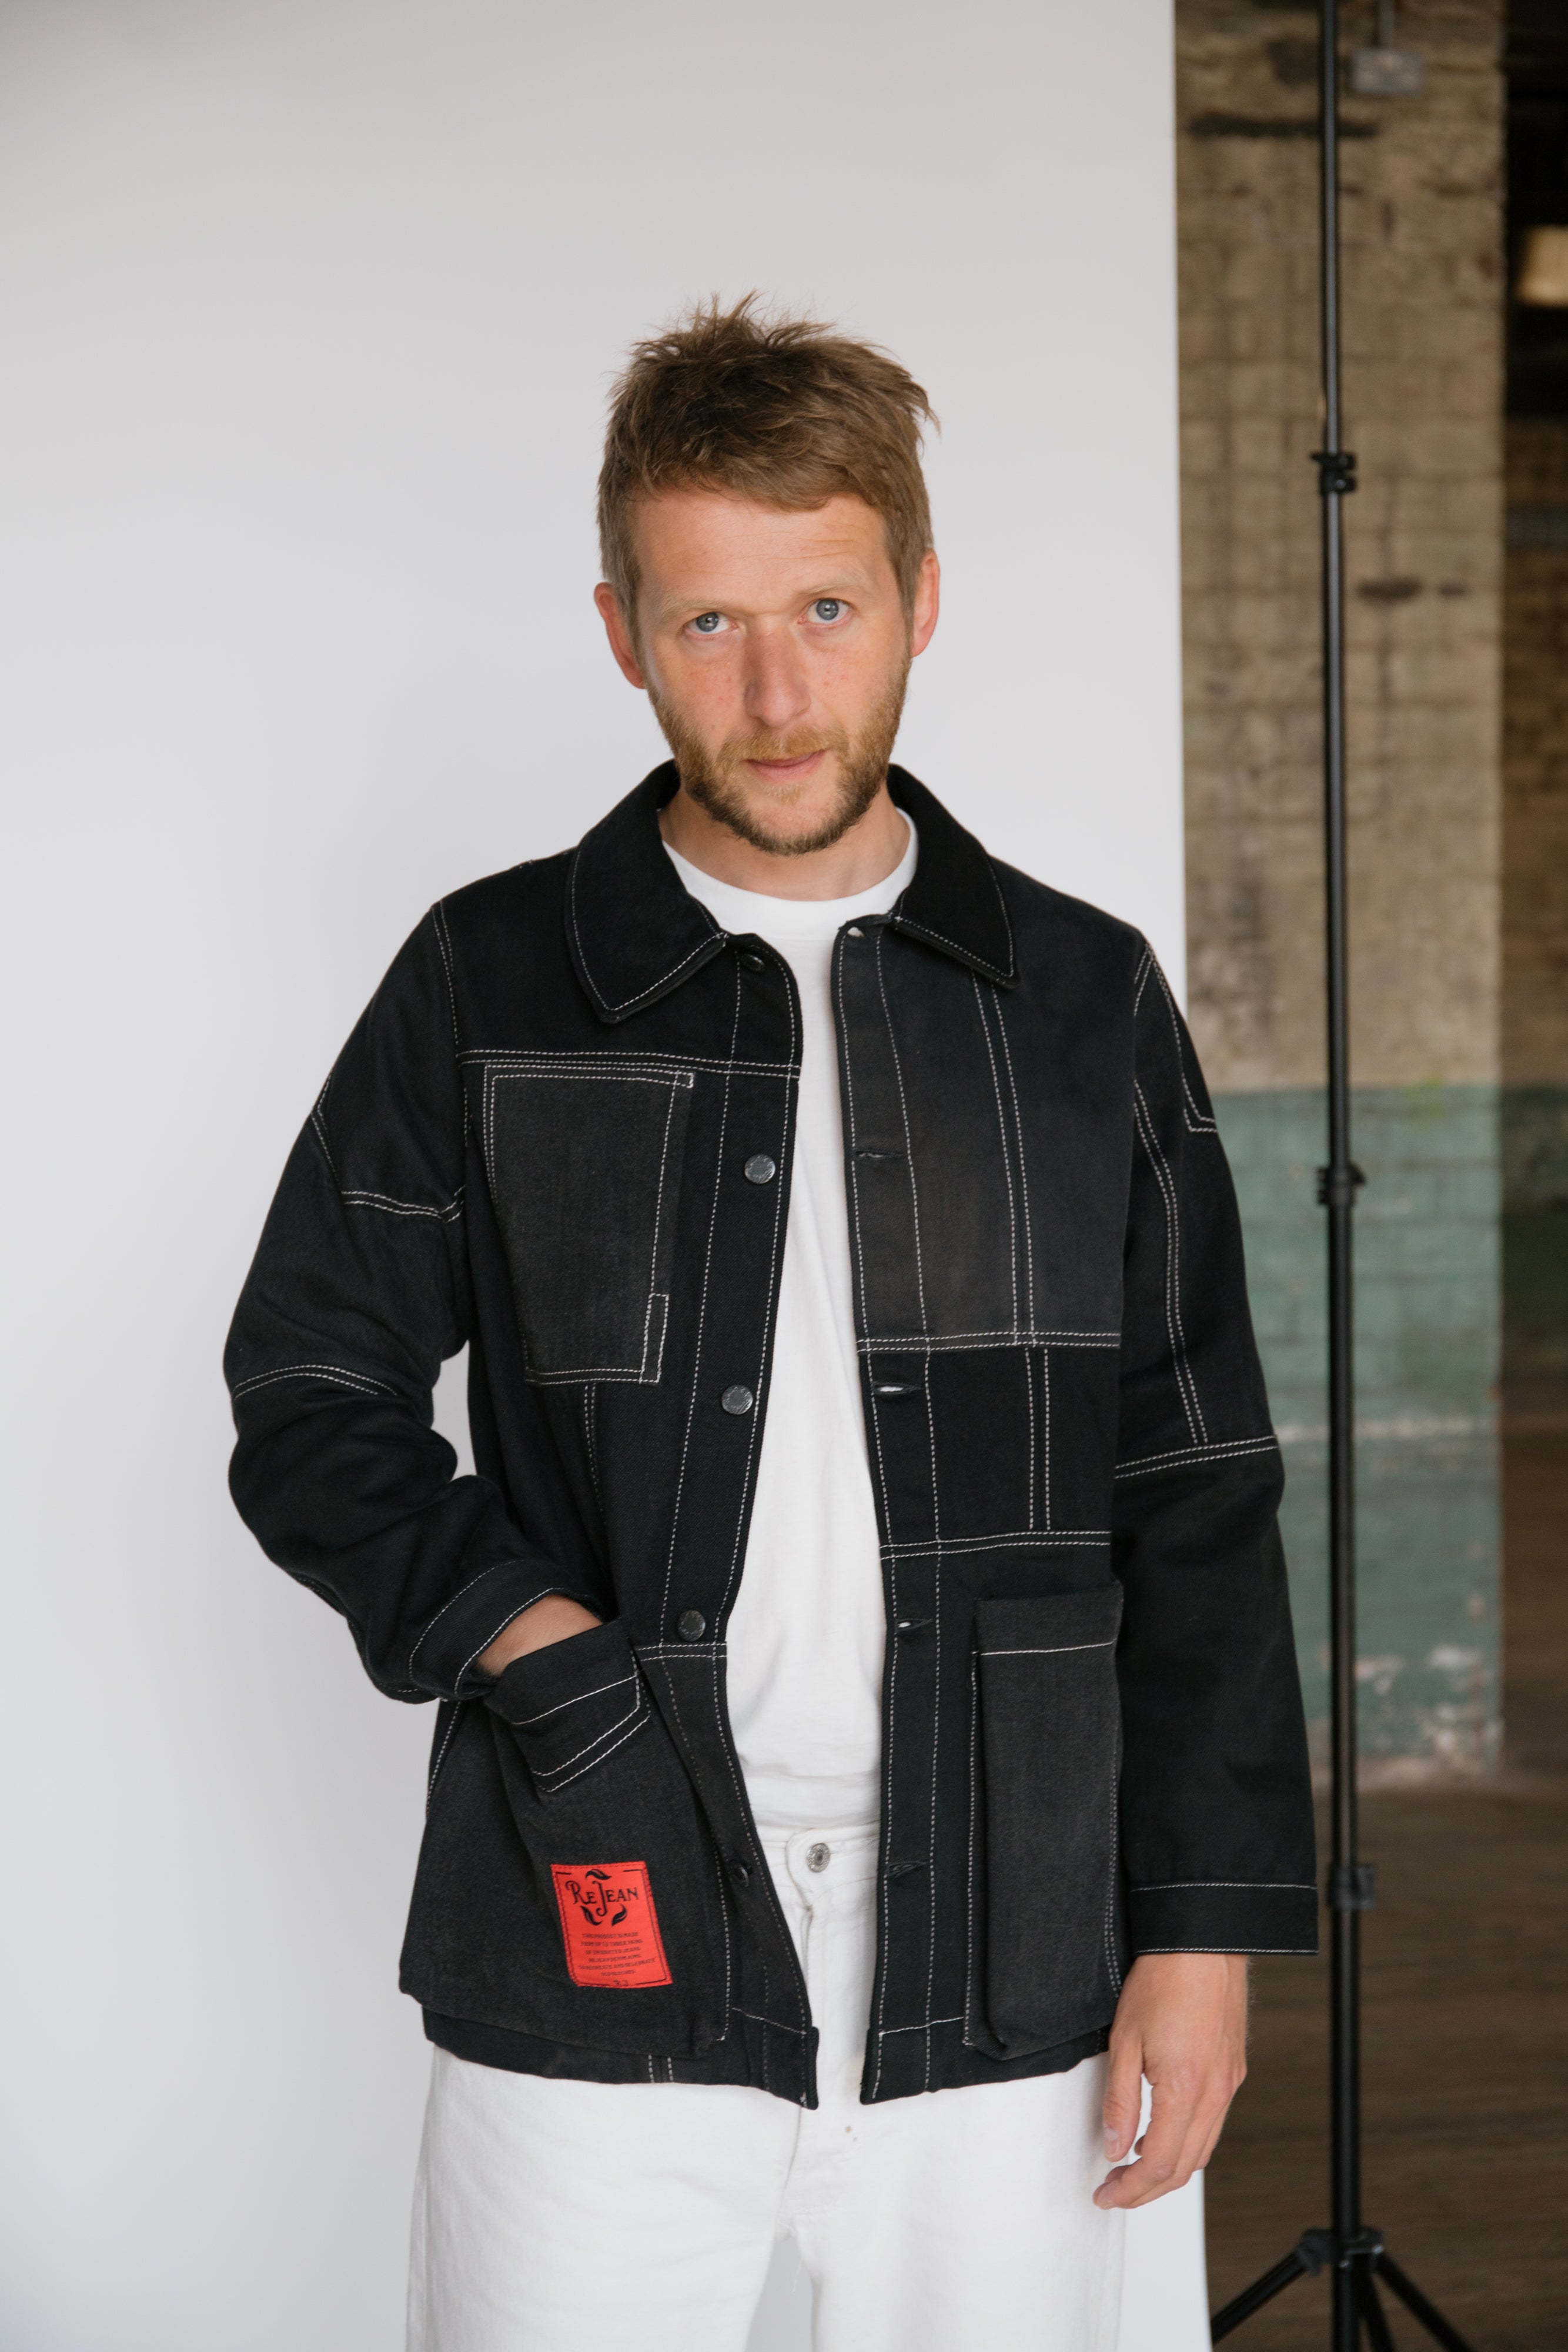 Gallow Jacket with Bellow Pockets in  Patchwork Denim - ReJean Denim - zero waste - circular fashion brand 